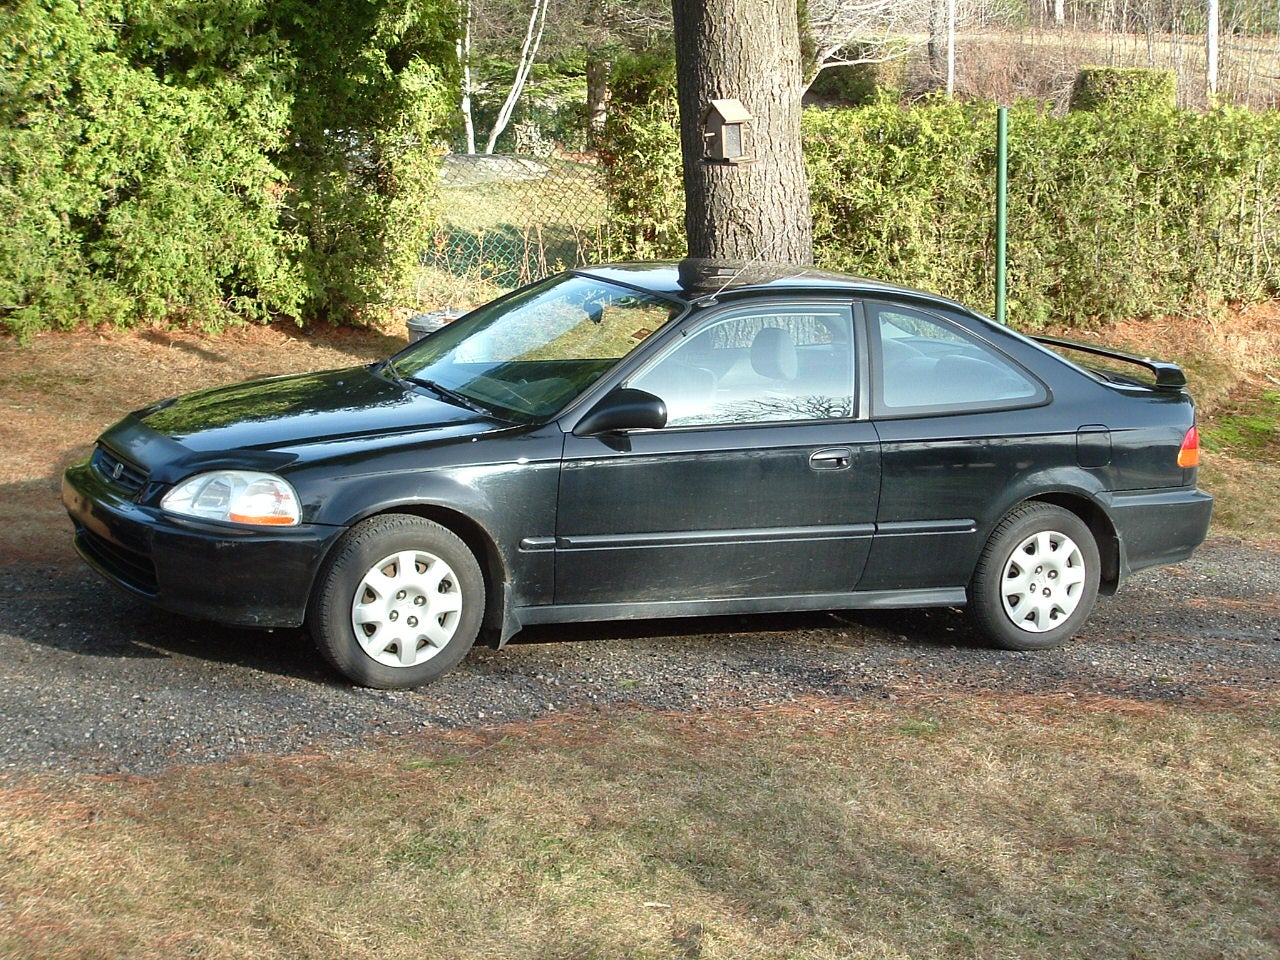 1998 Honda Civic Coupe - Pictures - CarGurus